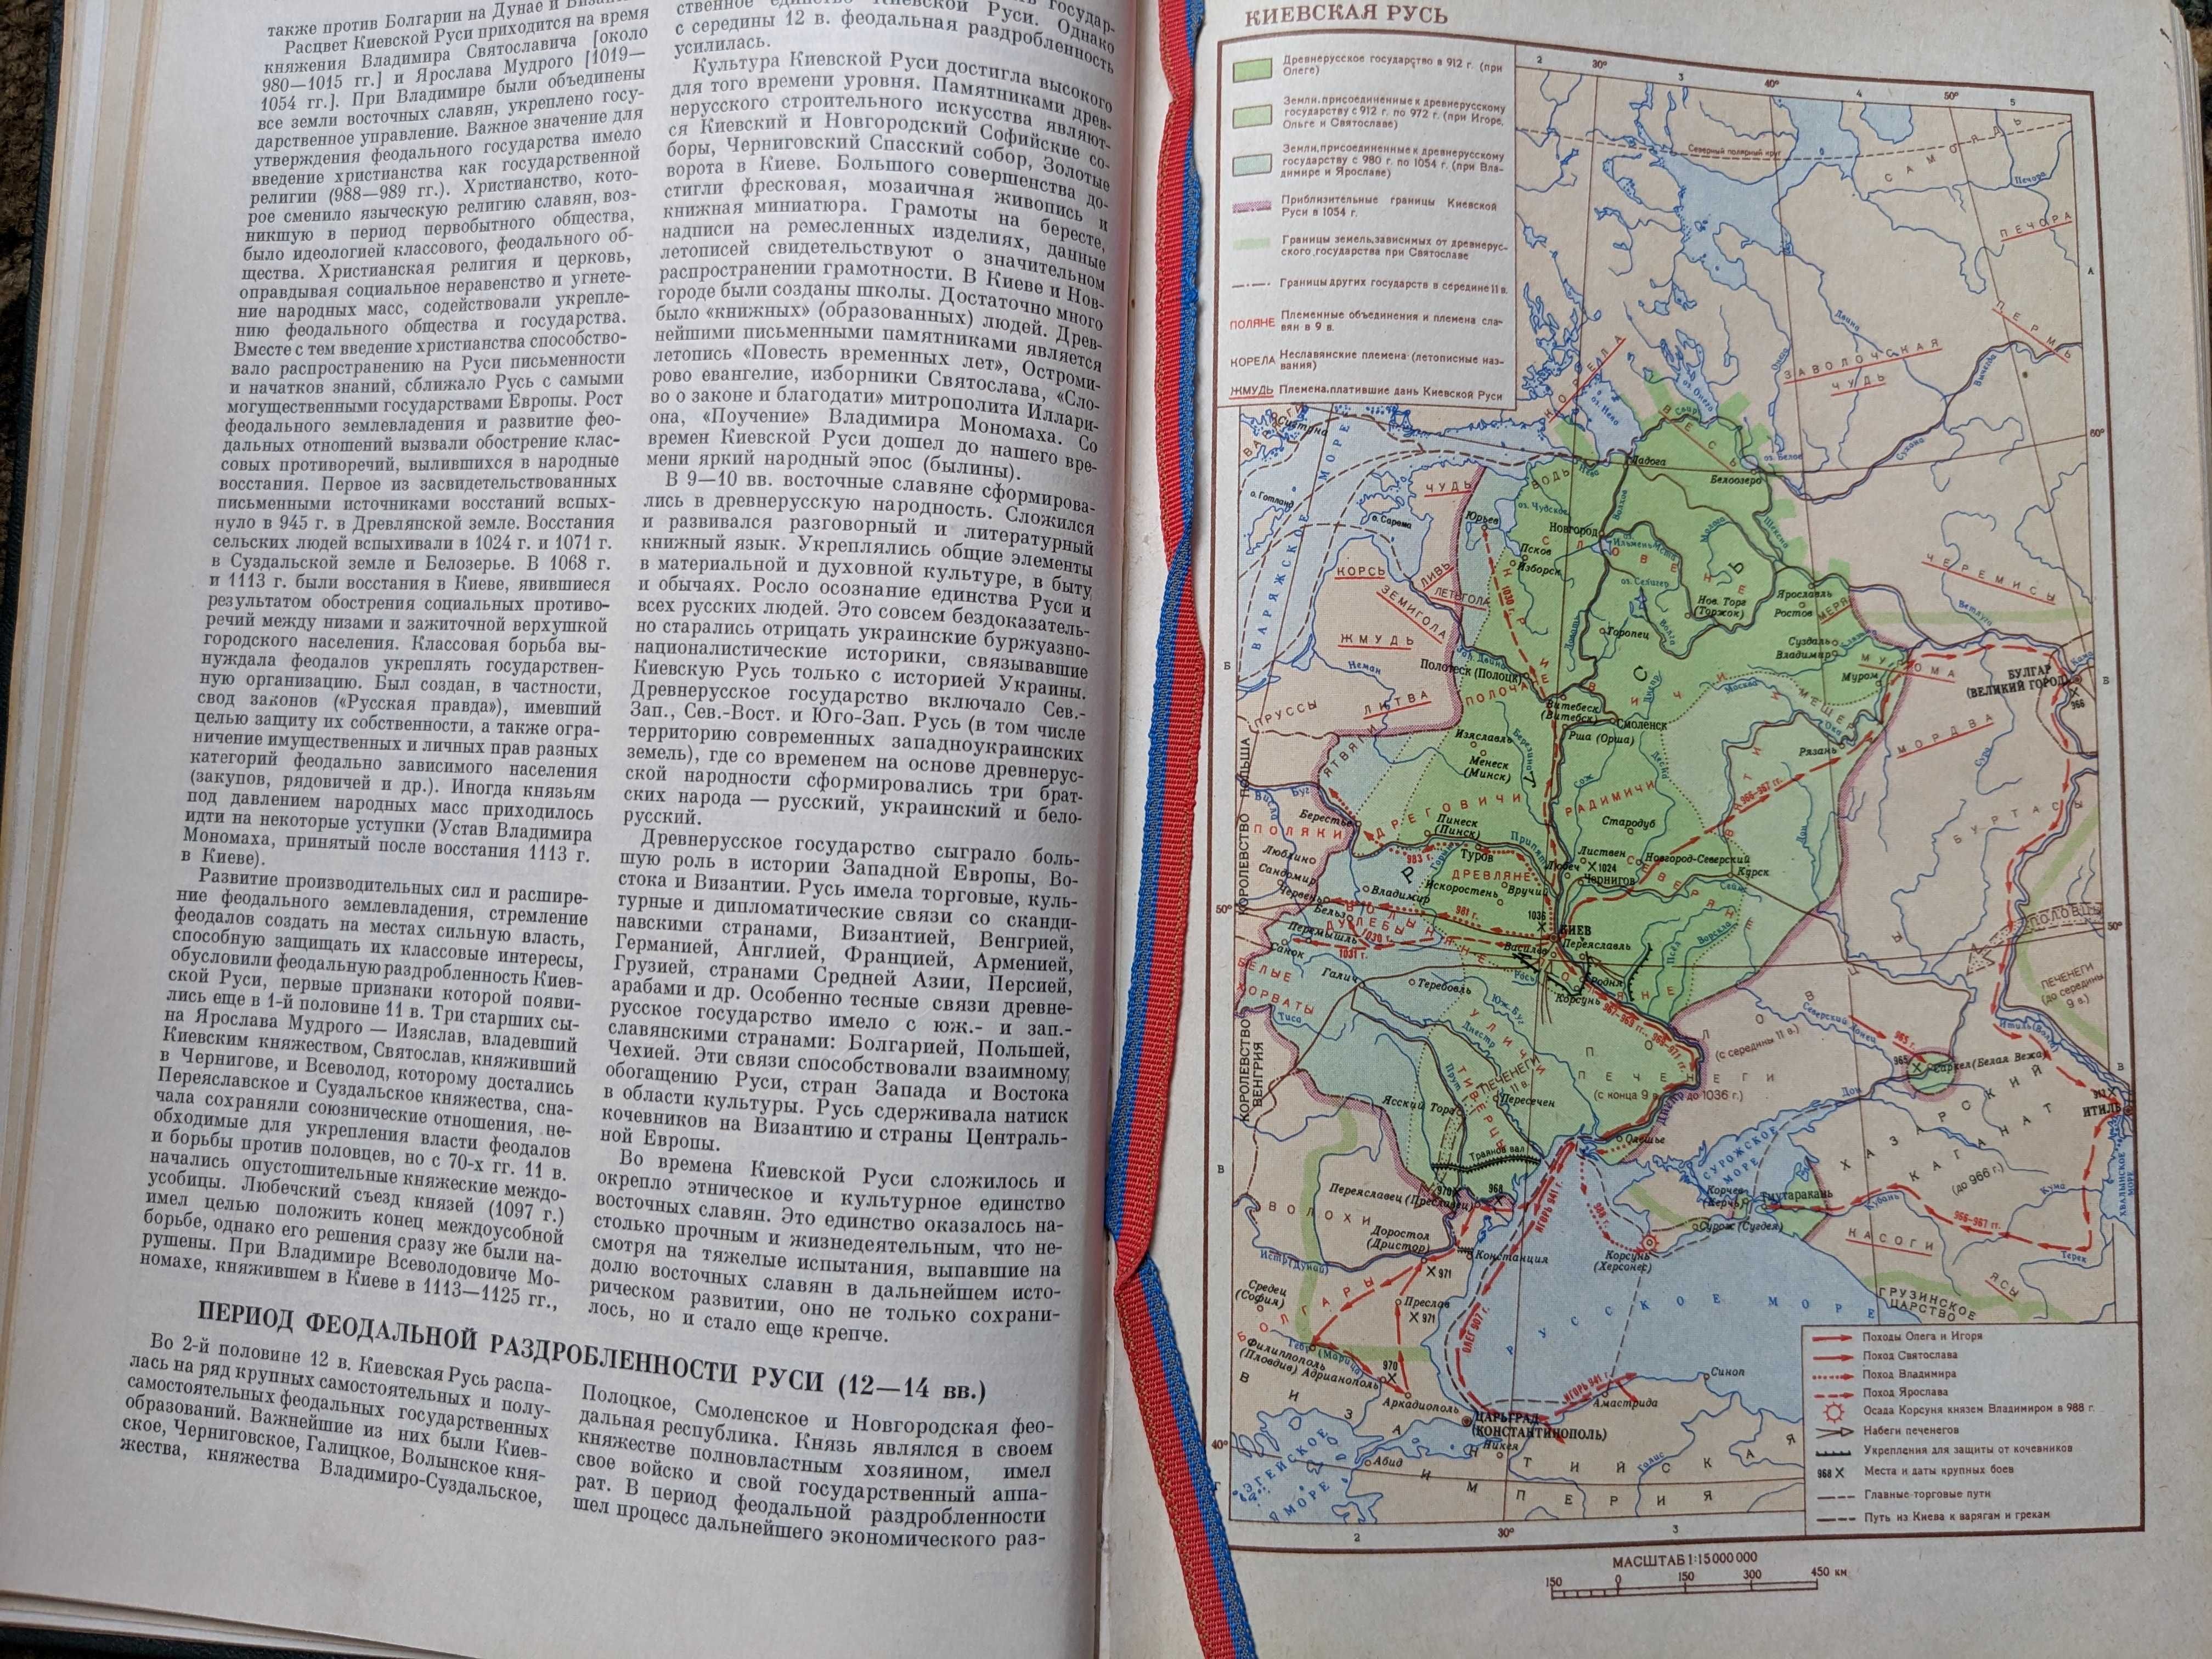 Украинская ССР 1967 год издания + Историография истории УССР